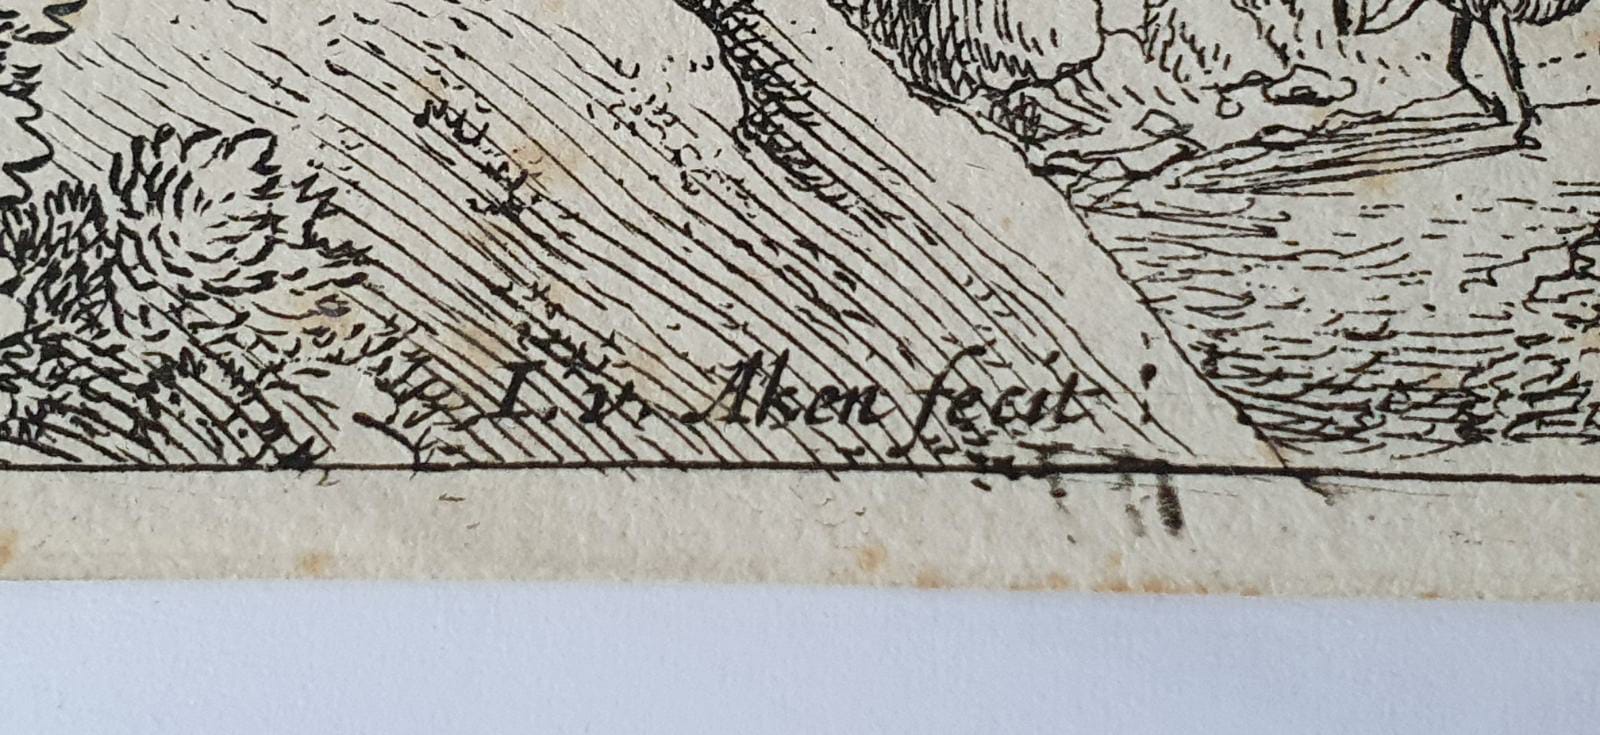 [Antique etching, ets] J. v. Aken, after H. Saftleven. Landscape: view of the Rhine, published 1624-1661.